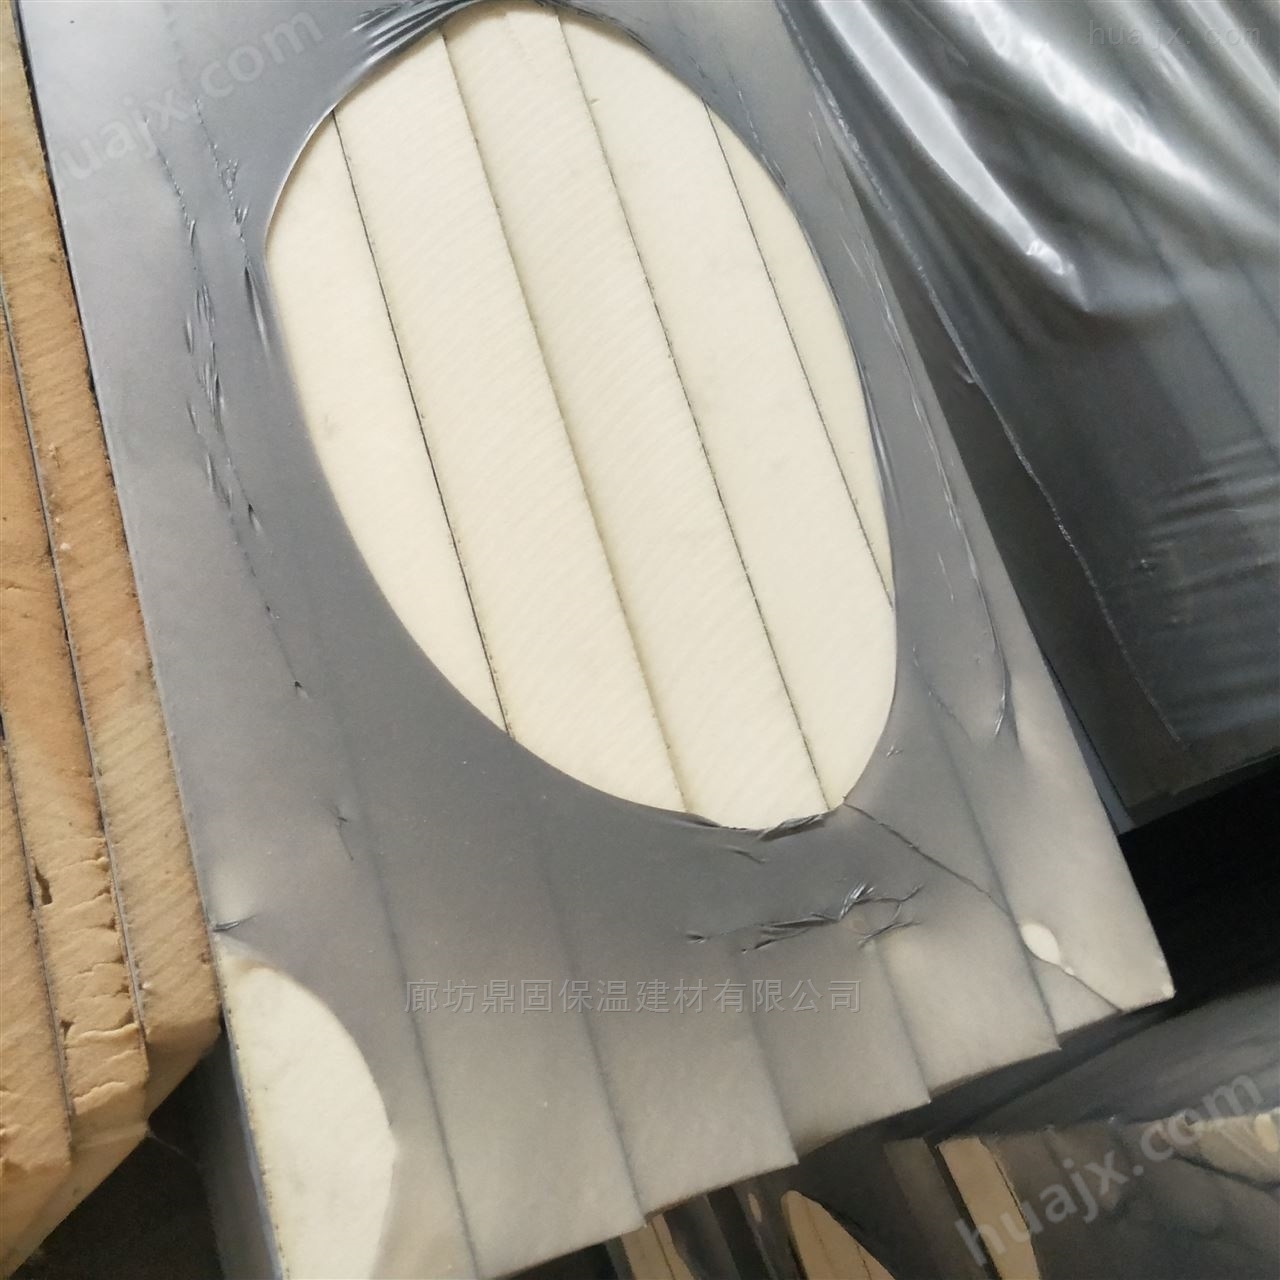 鞍山厂家聚氨酯硬质屋面保温板采购项目